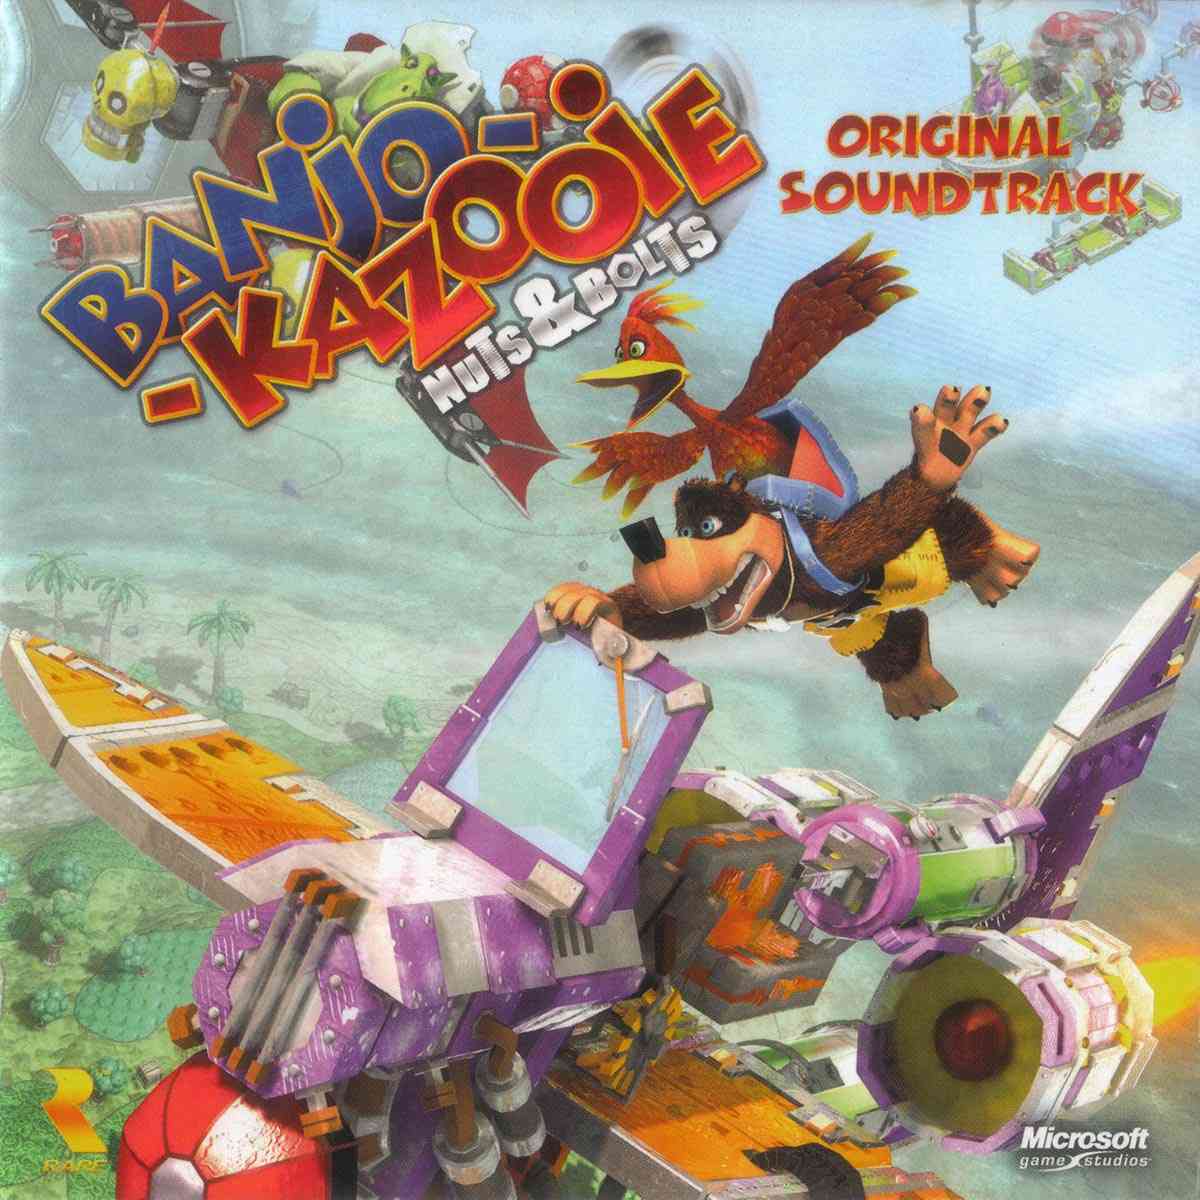 Banjo-Kazooie Nuts & Bolts Original Soundtrack